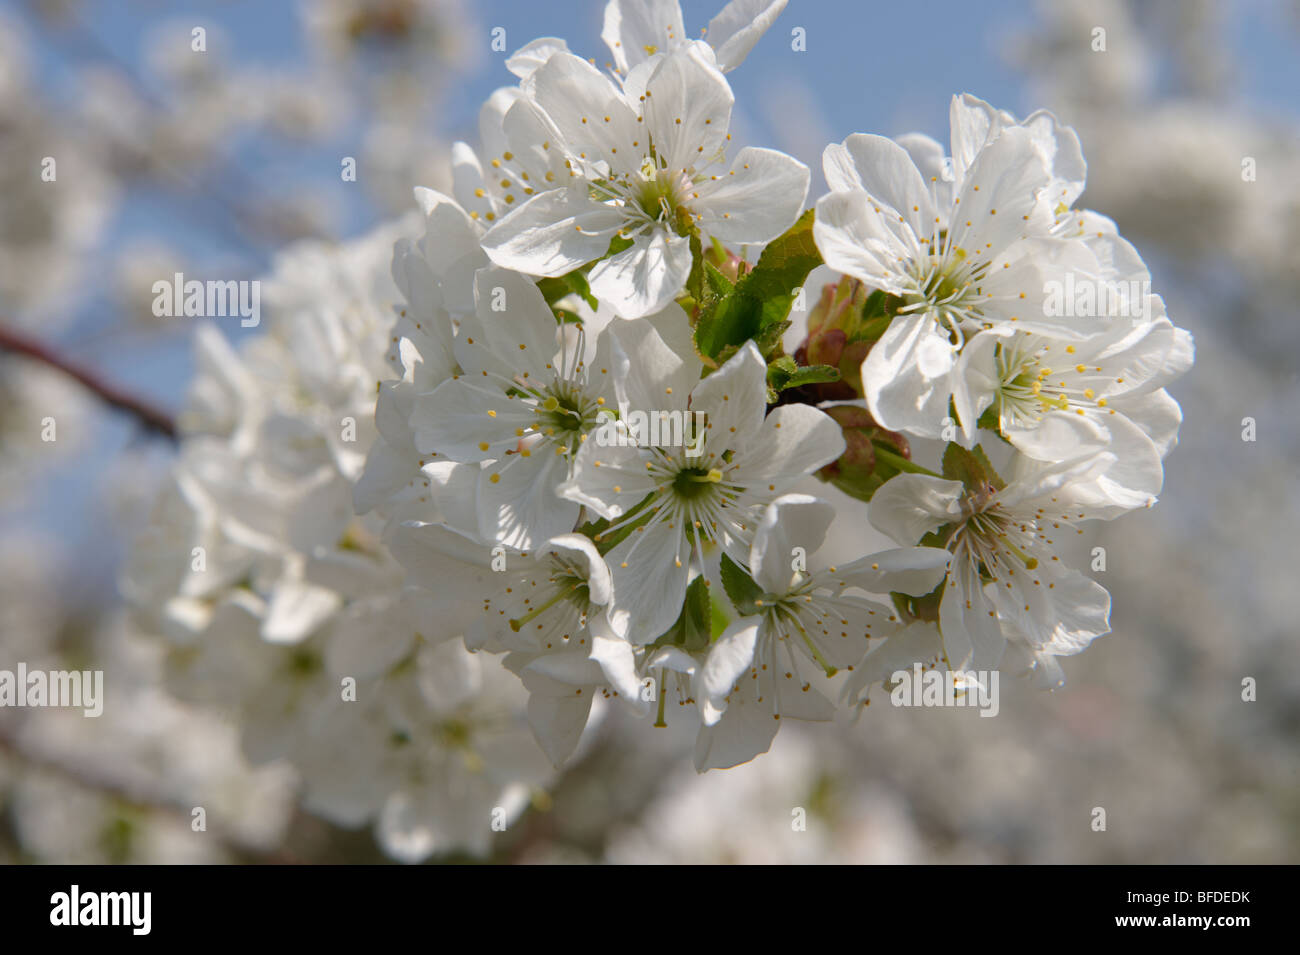 Cerezos en flor blanca en el árbol del huerto. Foto de stock